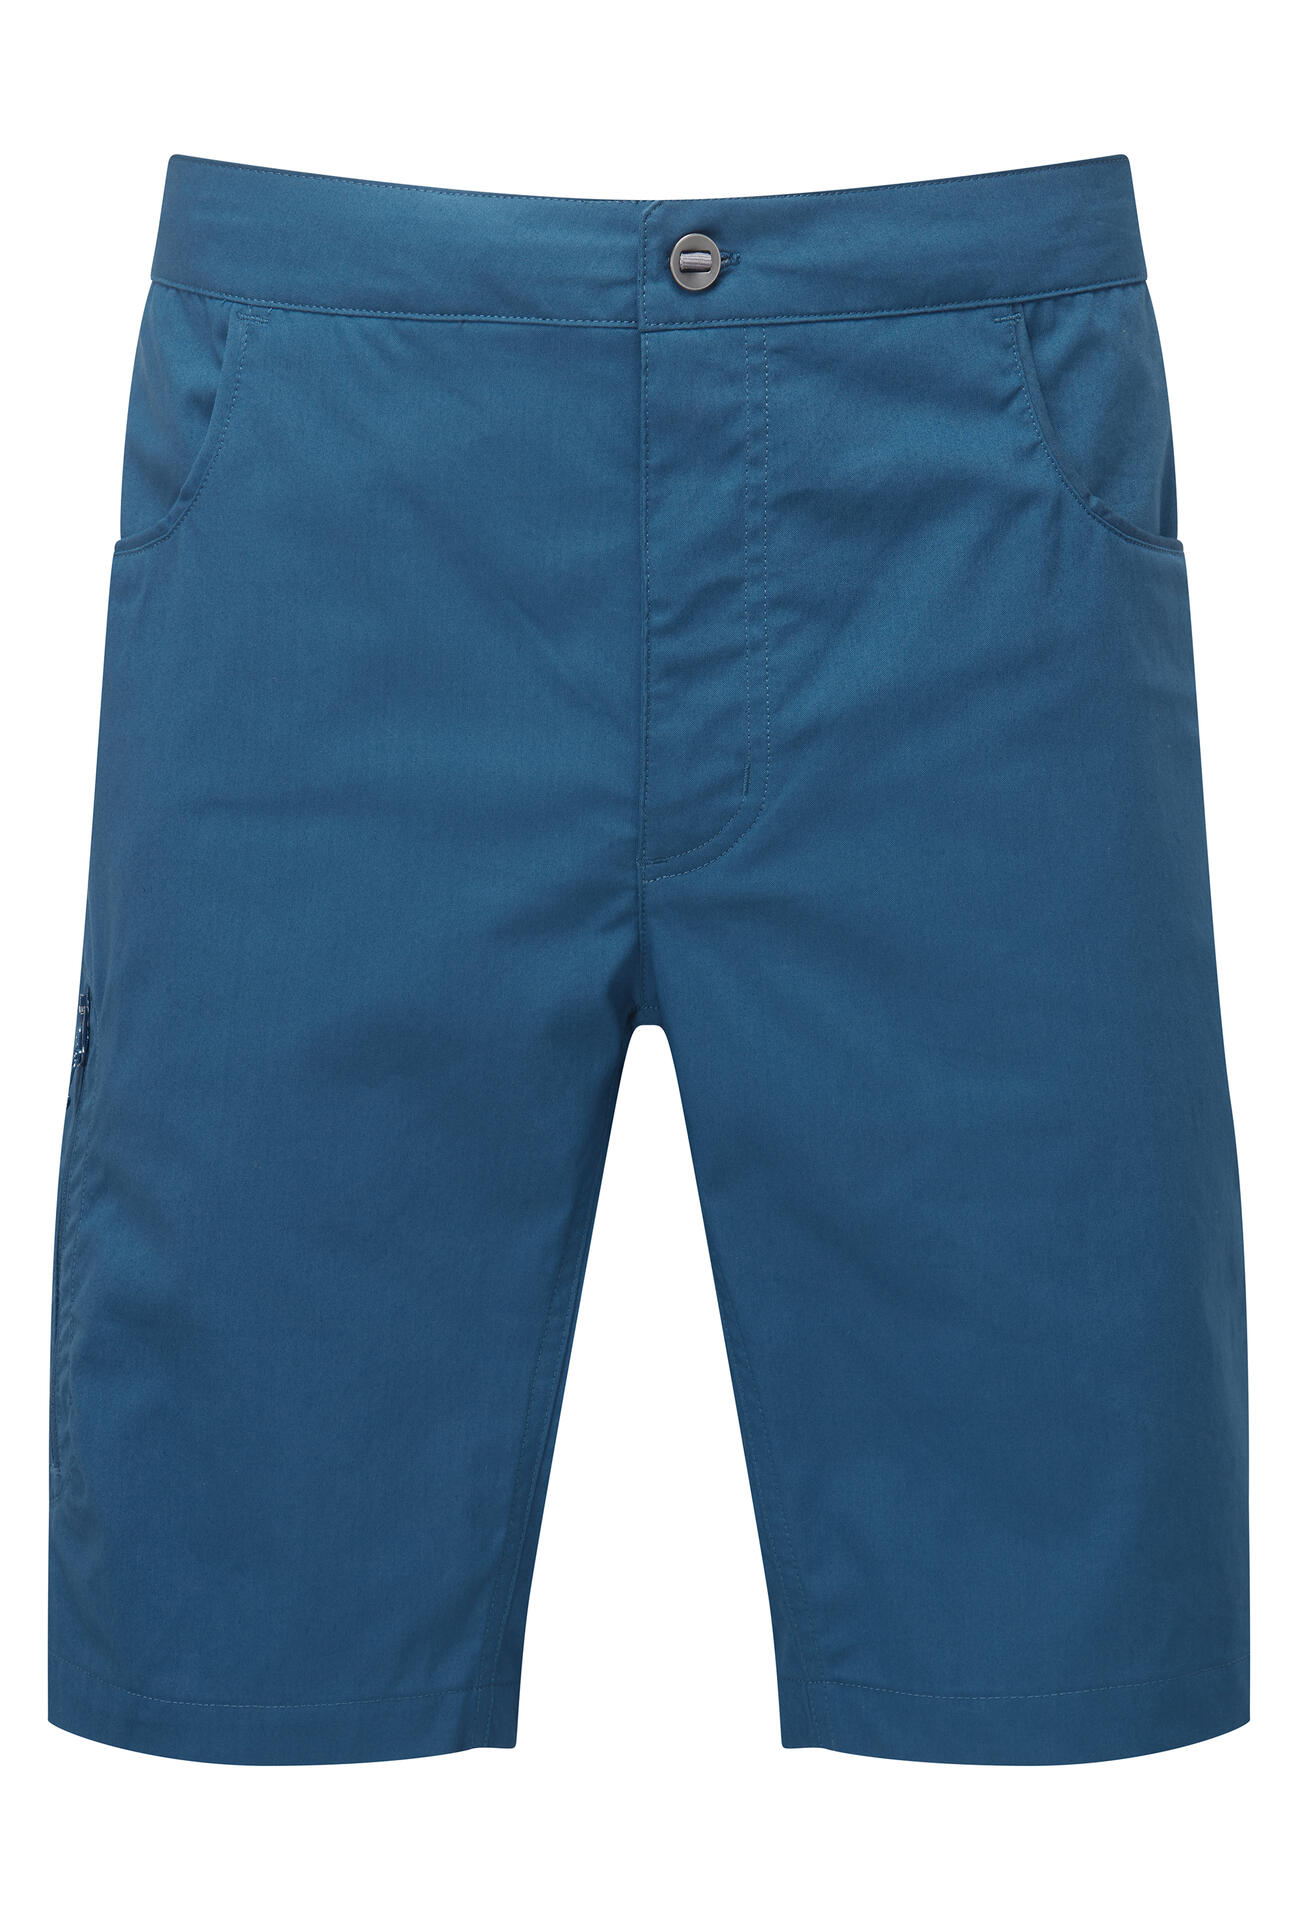 Mountain Equipment Anvil Short Men'S Barva: Majolica Blue, Velikost: XL